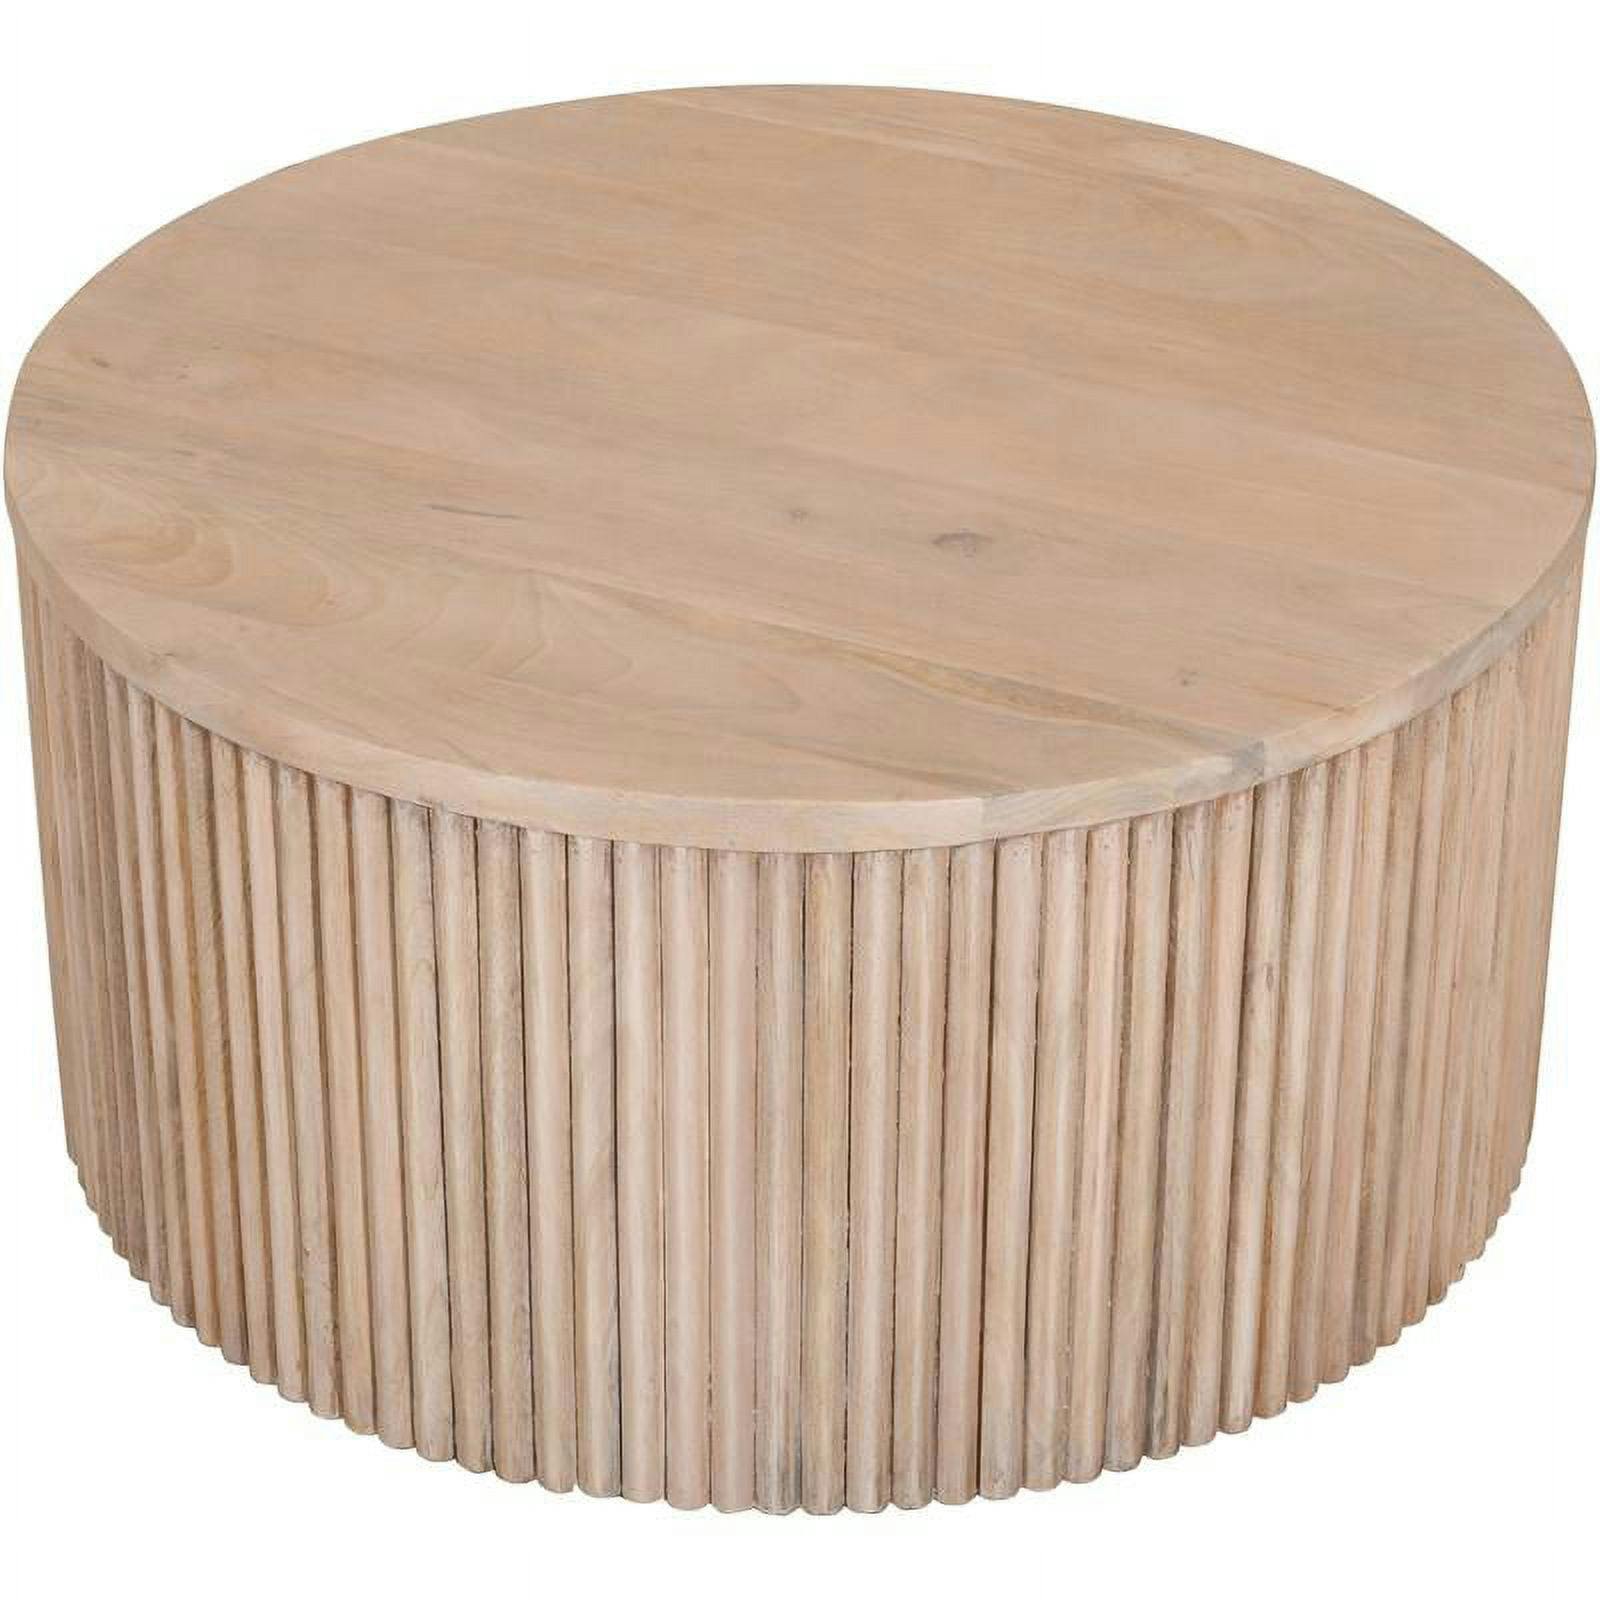 Oakhill 32" Round White Oak Finish Mango Wood Coffee Table with Storage